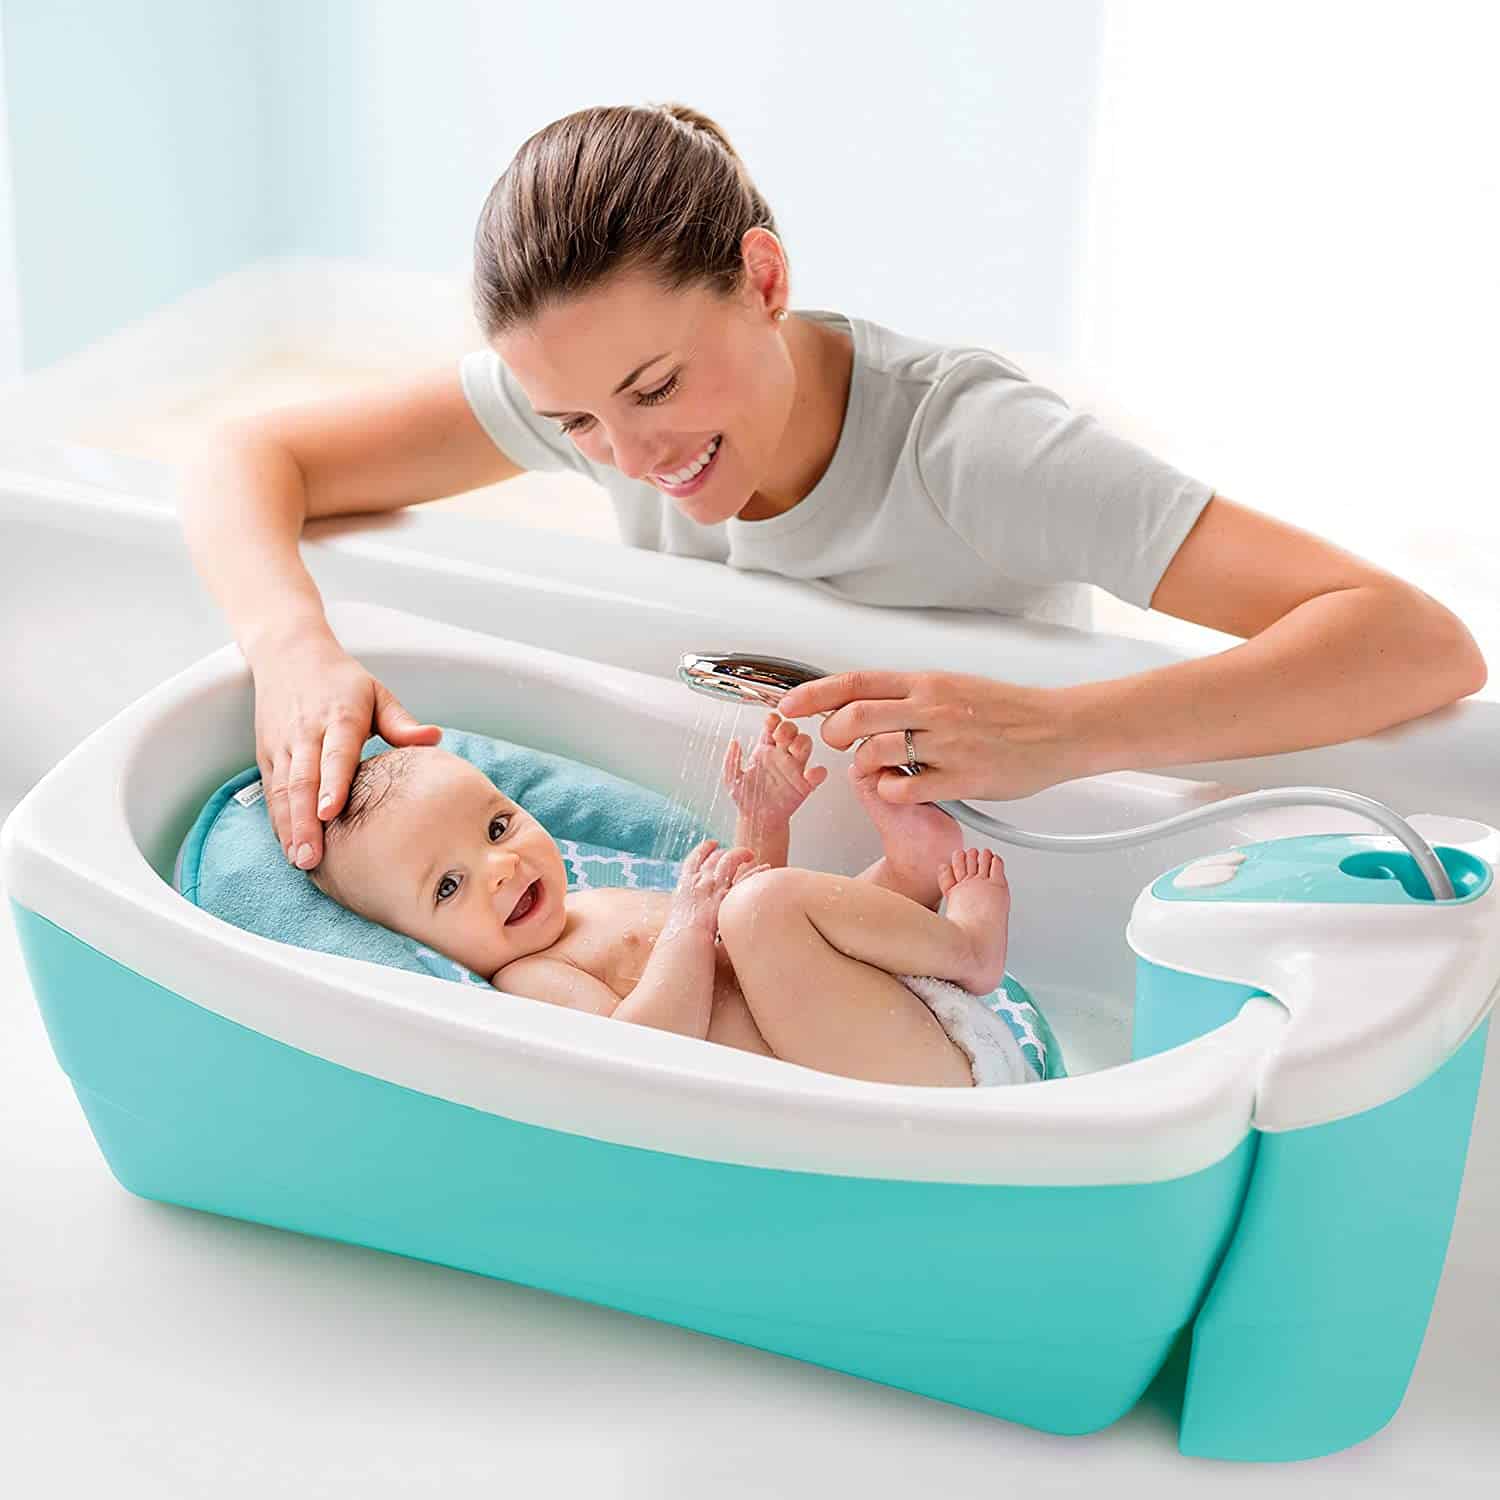 Baby Bathtubs For A Refreshing Bath, Best Newborn Bathtub